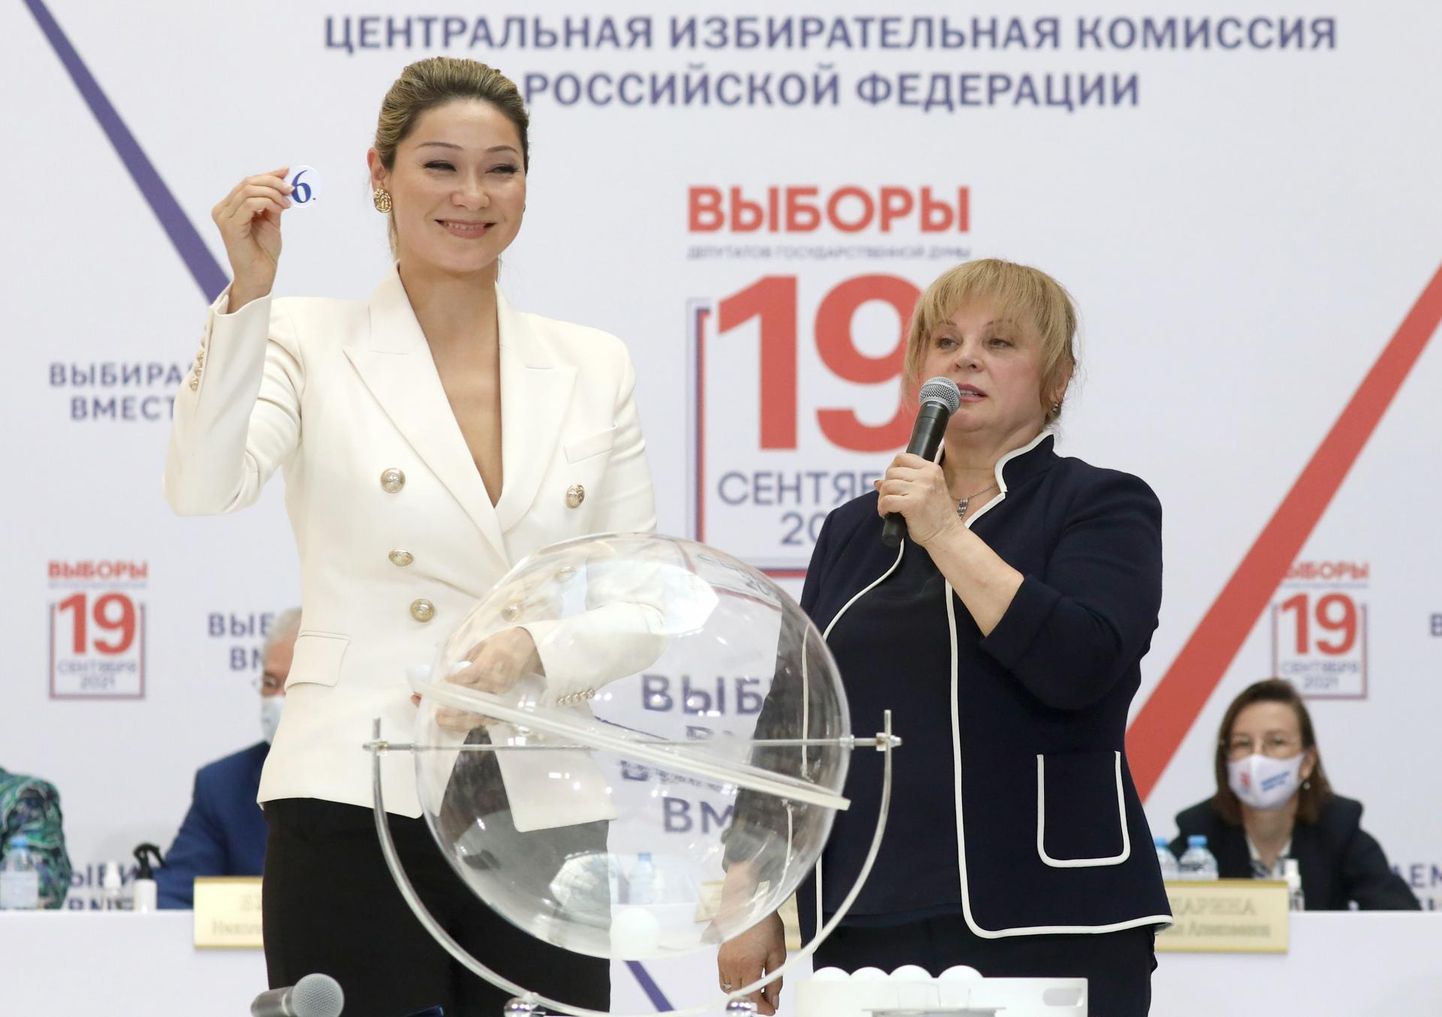 Telesaatejuht Marina Kim (vasakul) ja keskvalimiskomisjoni juht Ella Pamfilova loosimisel, kus selgitati välja riigiduuma valimistel osalevate erakondade järjekord valimissedelitel. 